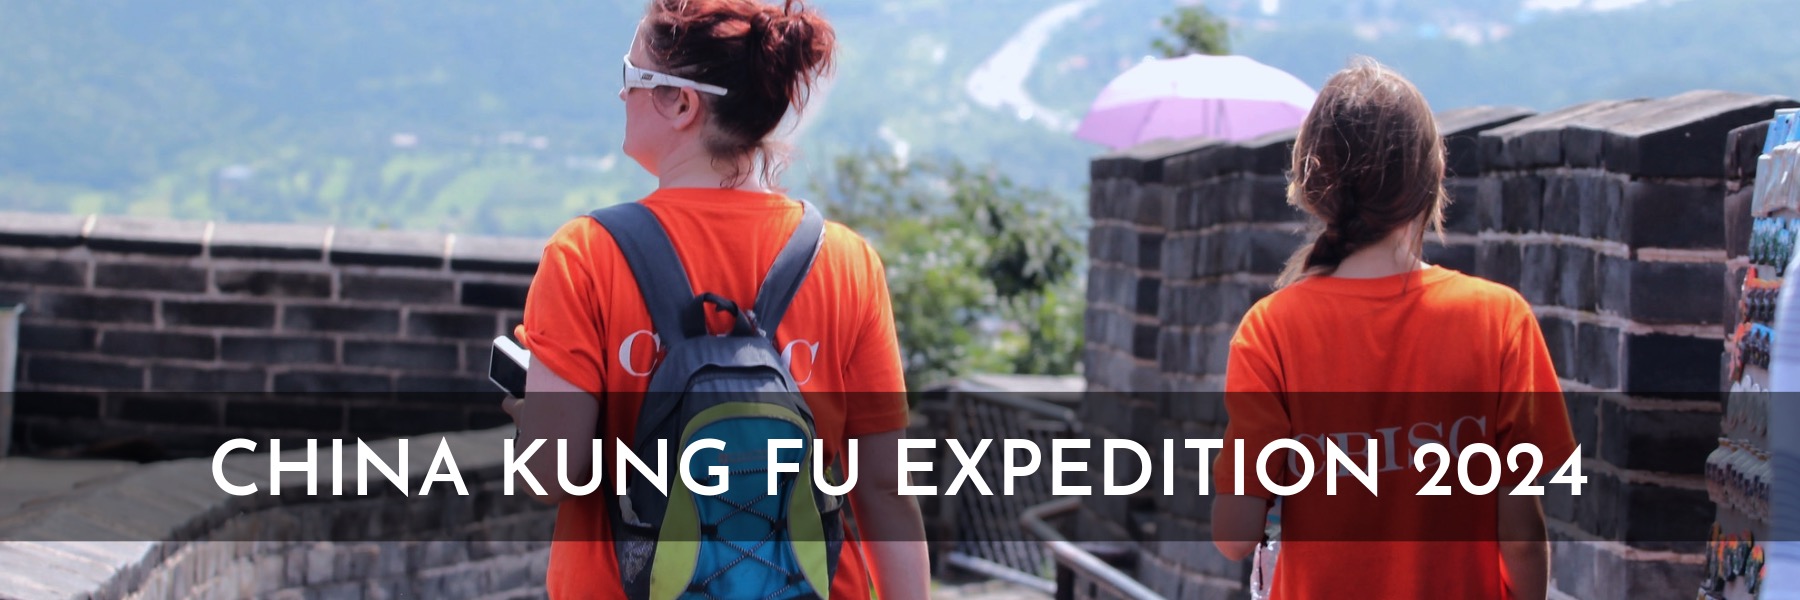 China Kung Fu Expedition